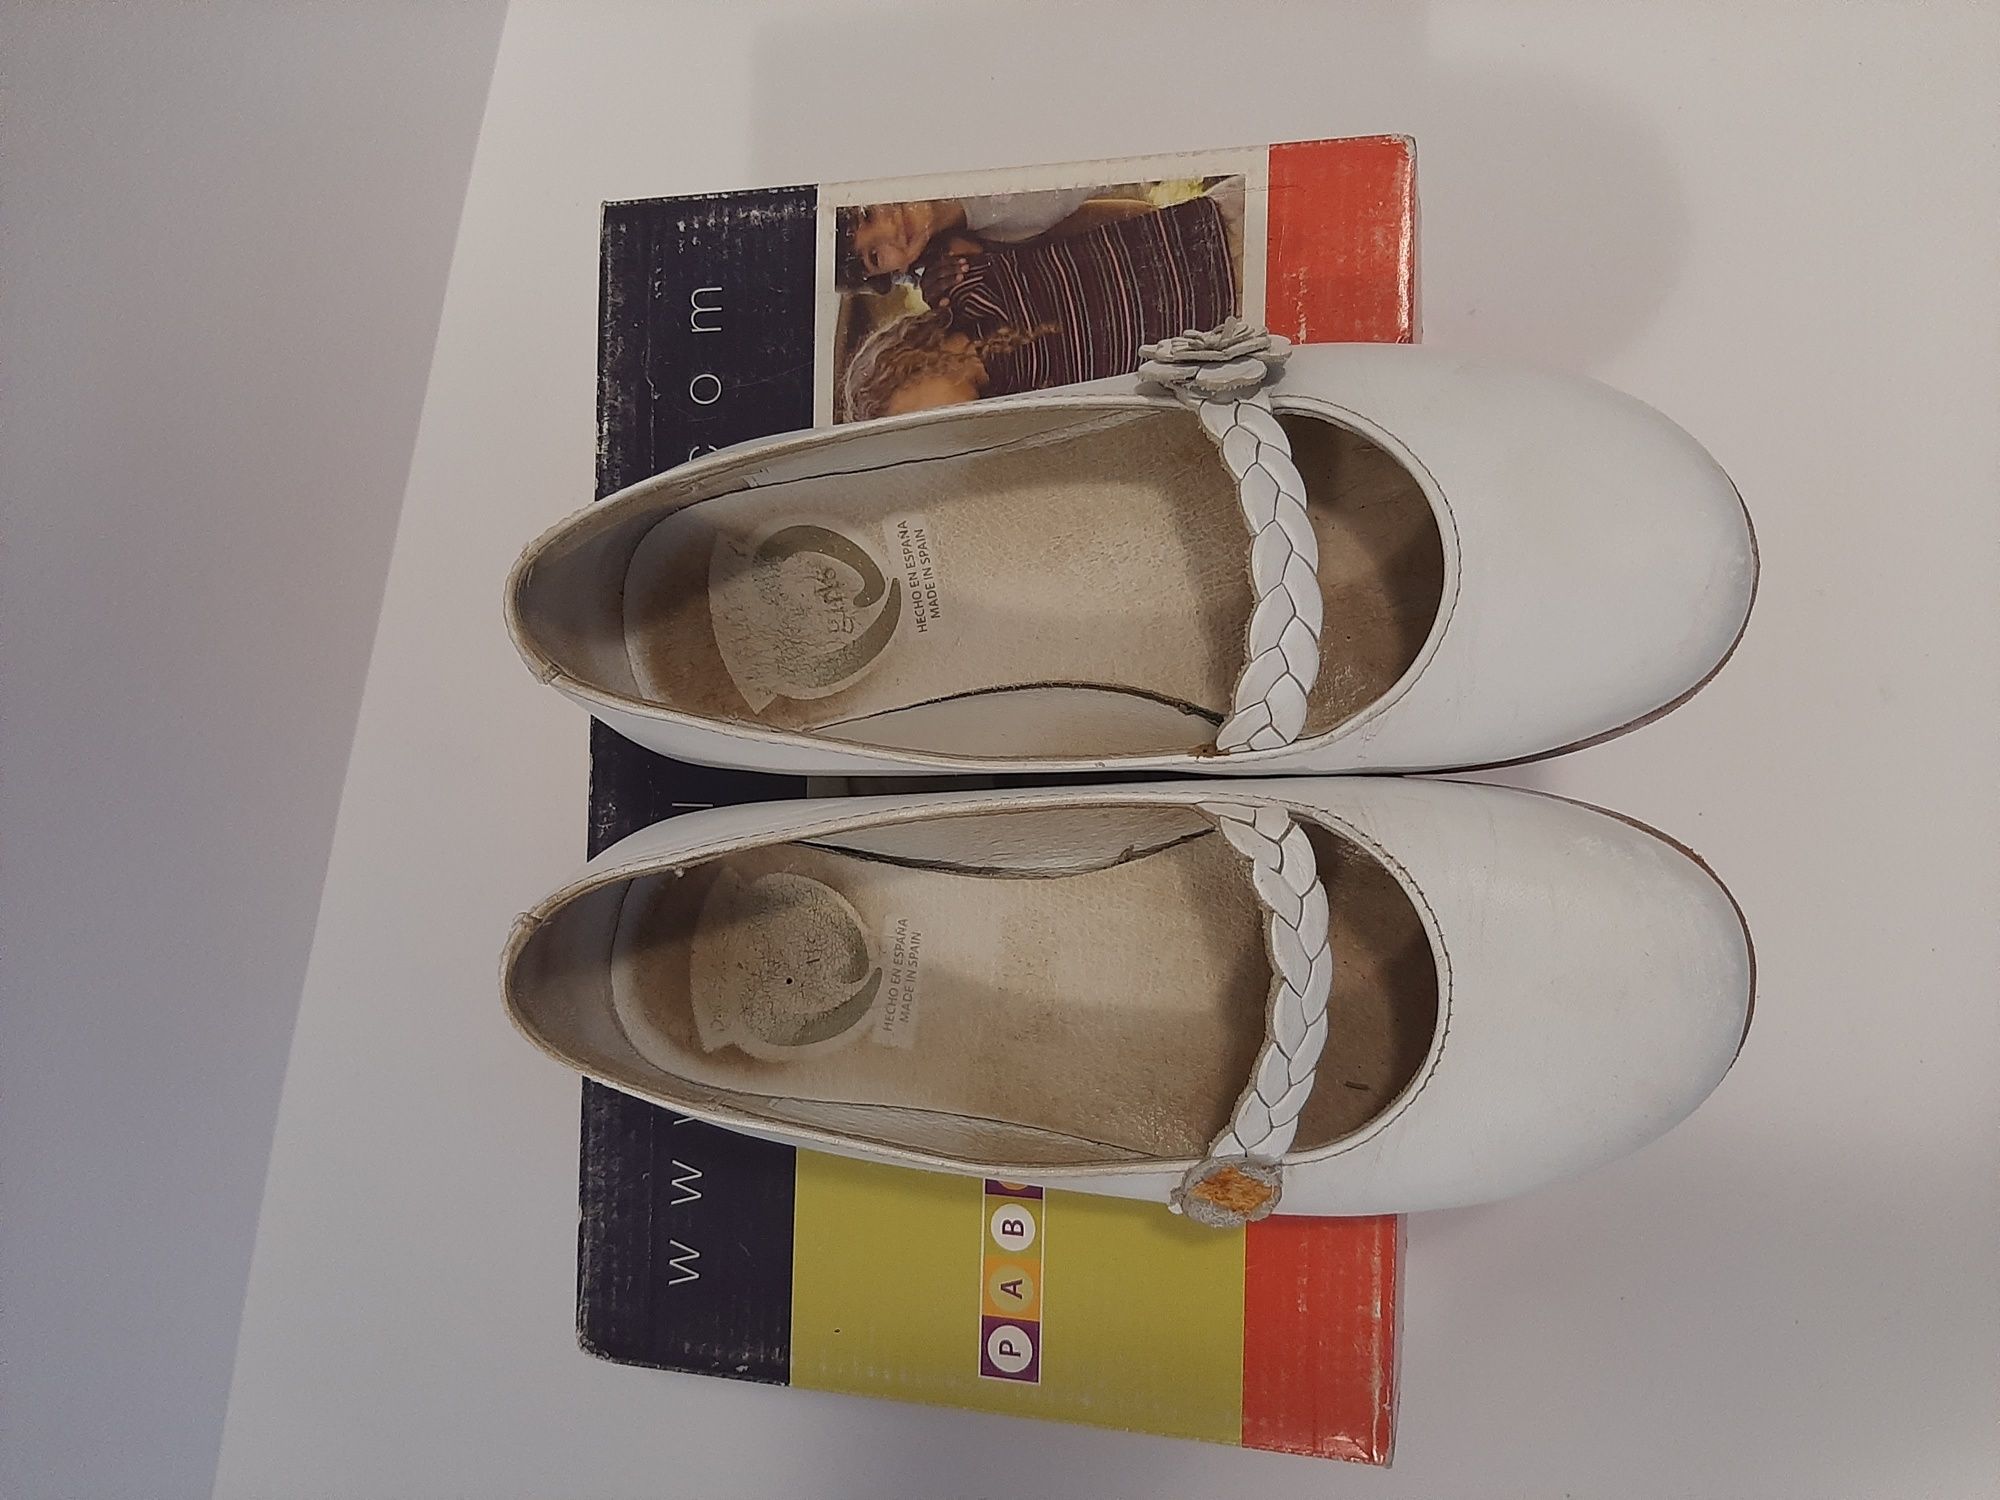 Pablosky туфлі матові білого кольору 32 розмір. Made in Spain